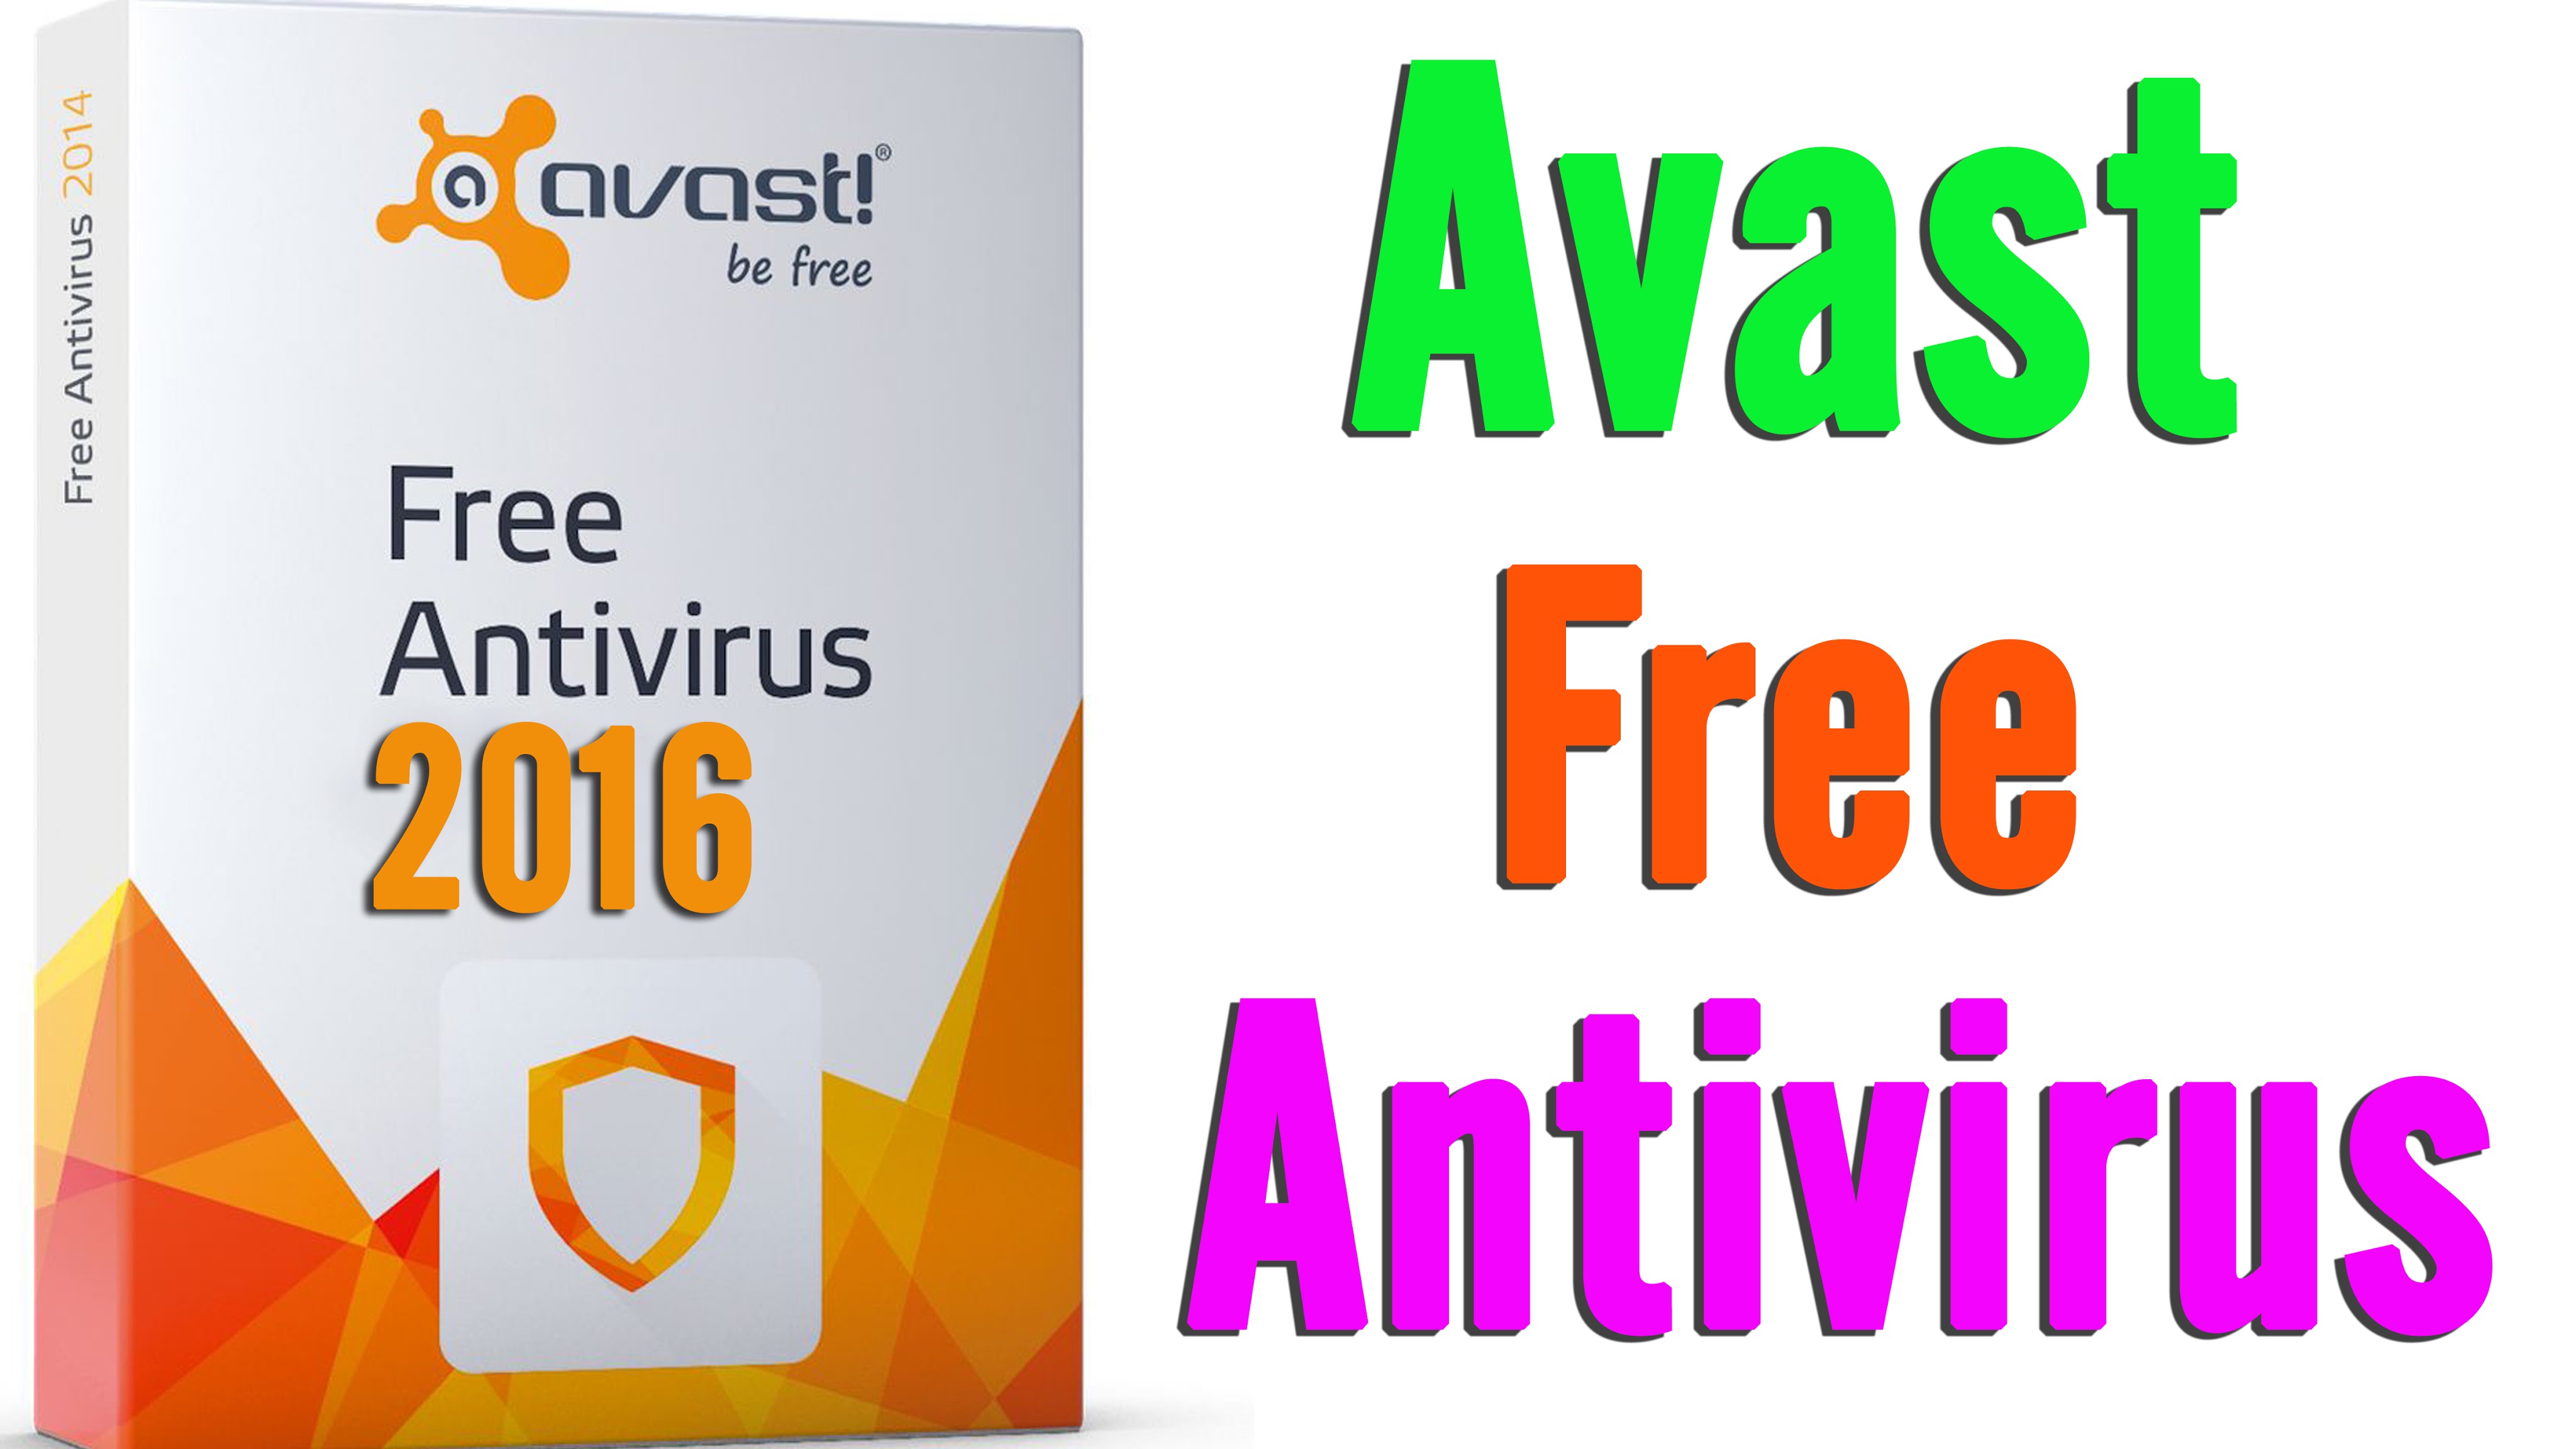 Avast 1 year free antivirus download 2016